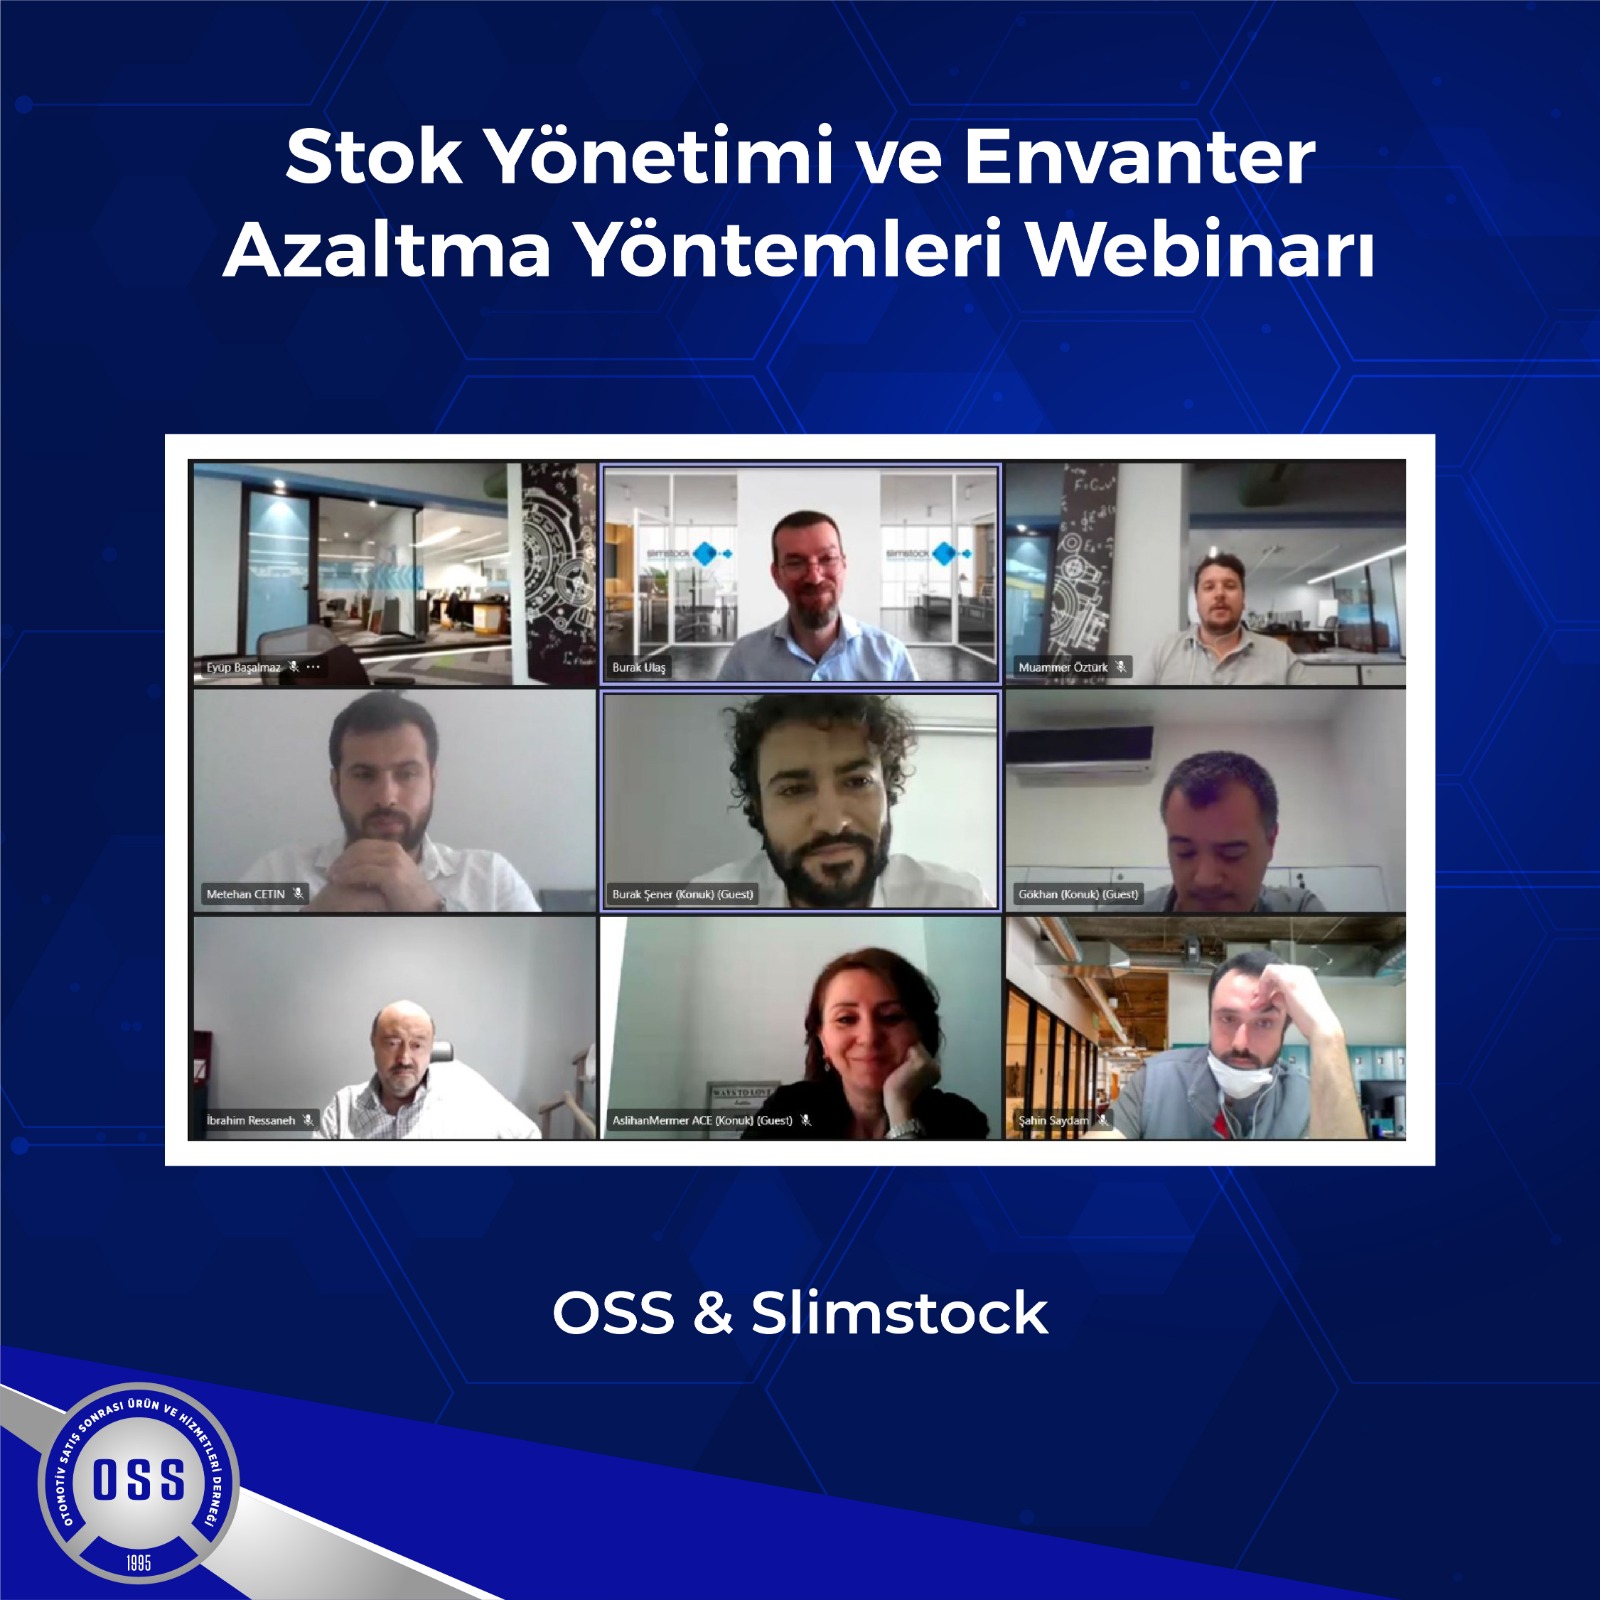 OSS & Slimstock İş Birliğinde Stok Yönetimi ve Envanter Azaltma Yöntemleri Konulu Webinar Büyük İlgi Gördü